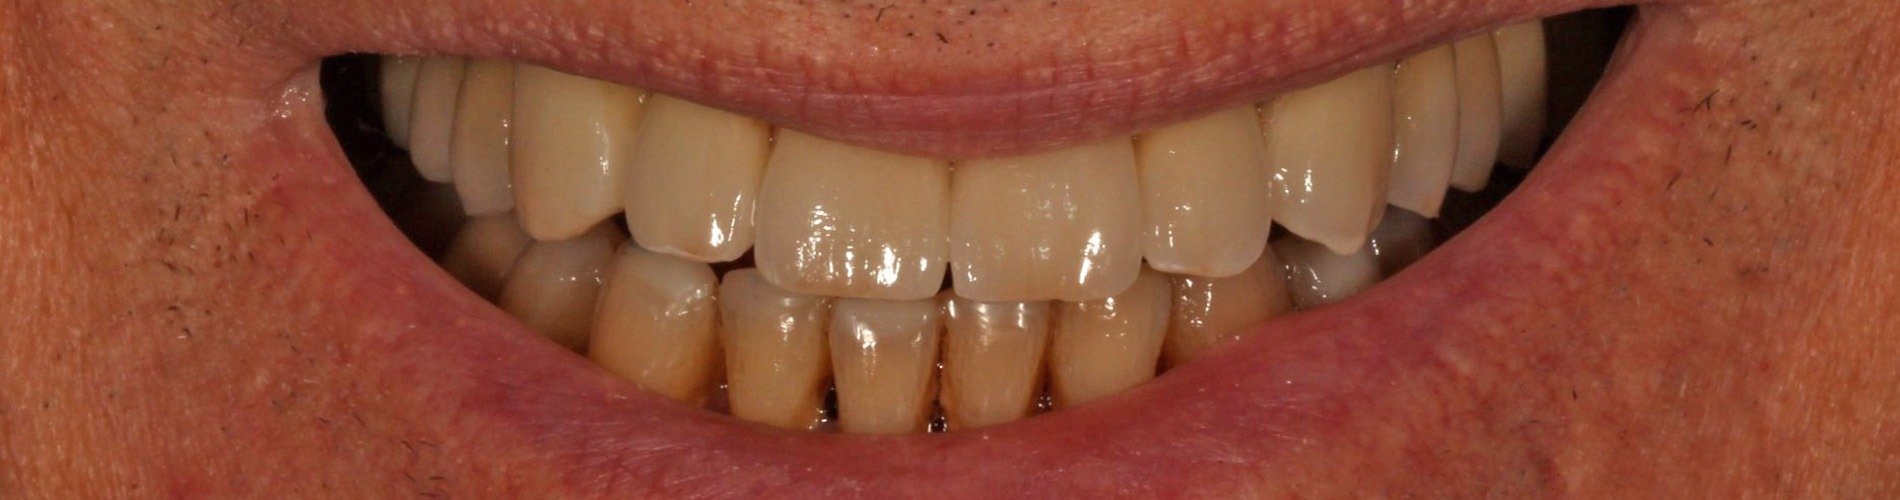 Dientes desgastados y sensibilidad dental